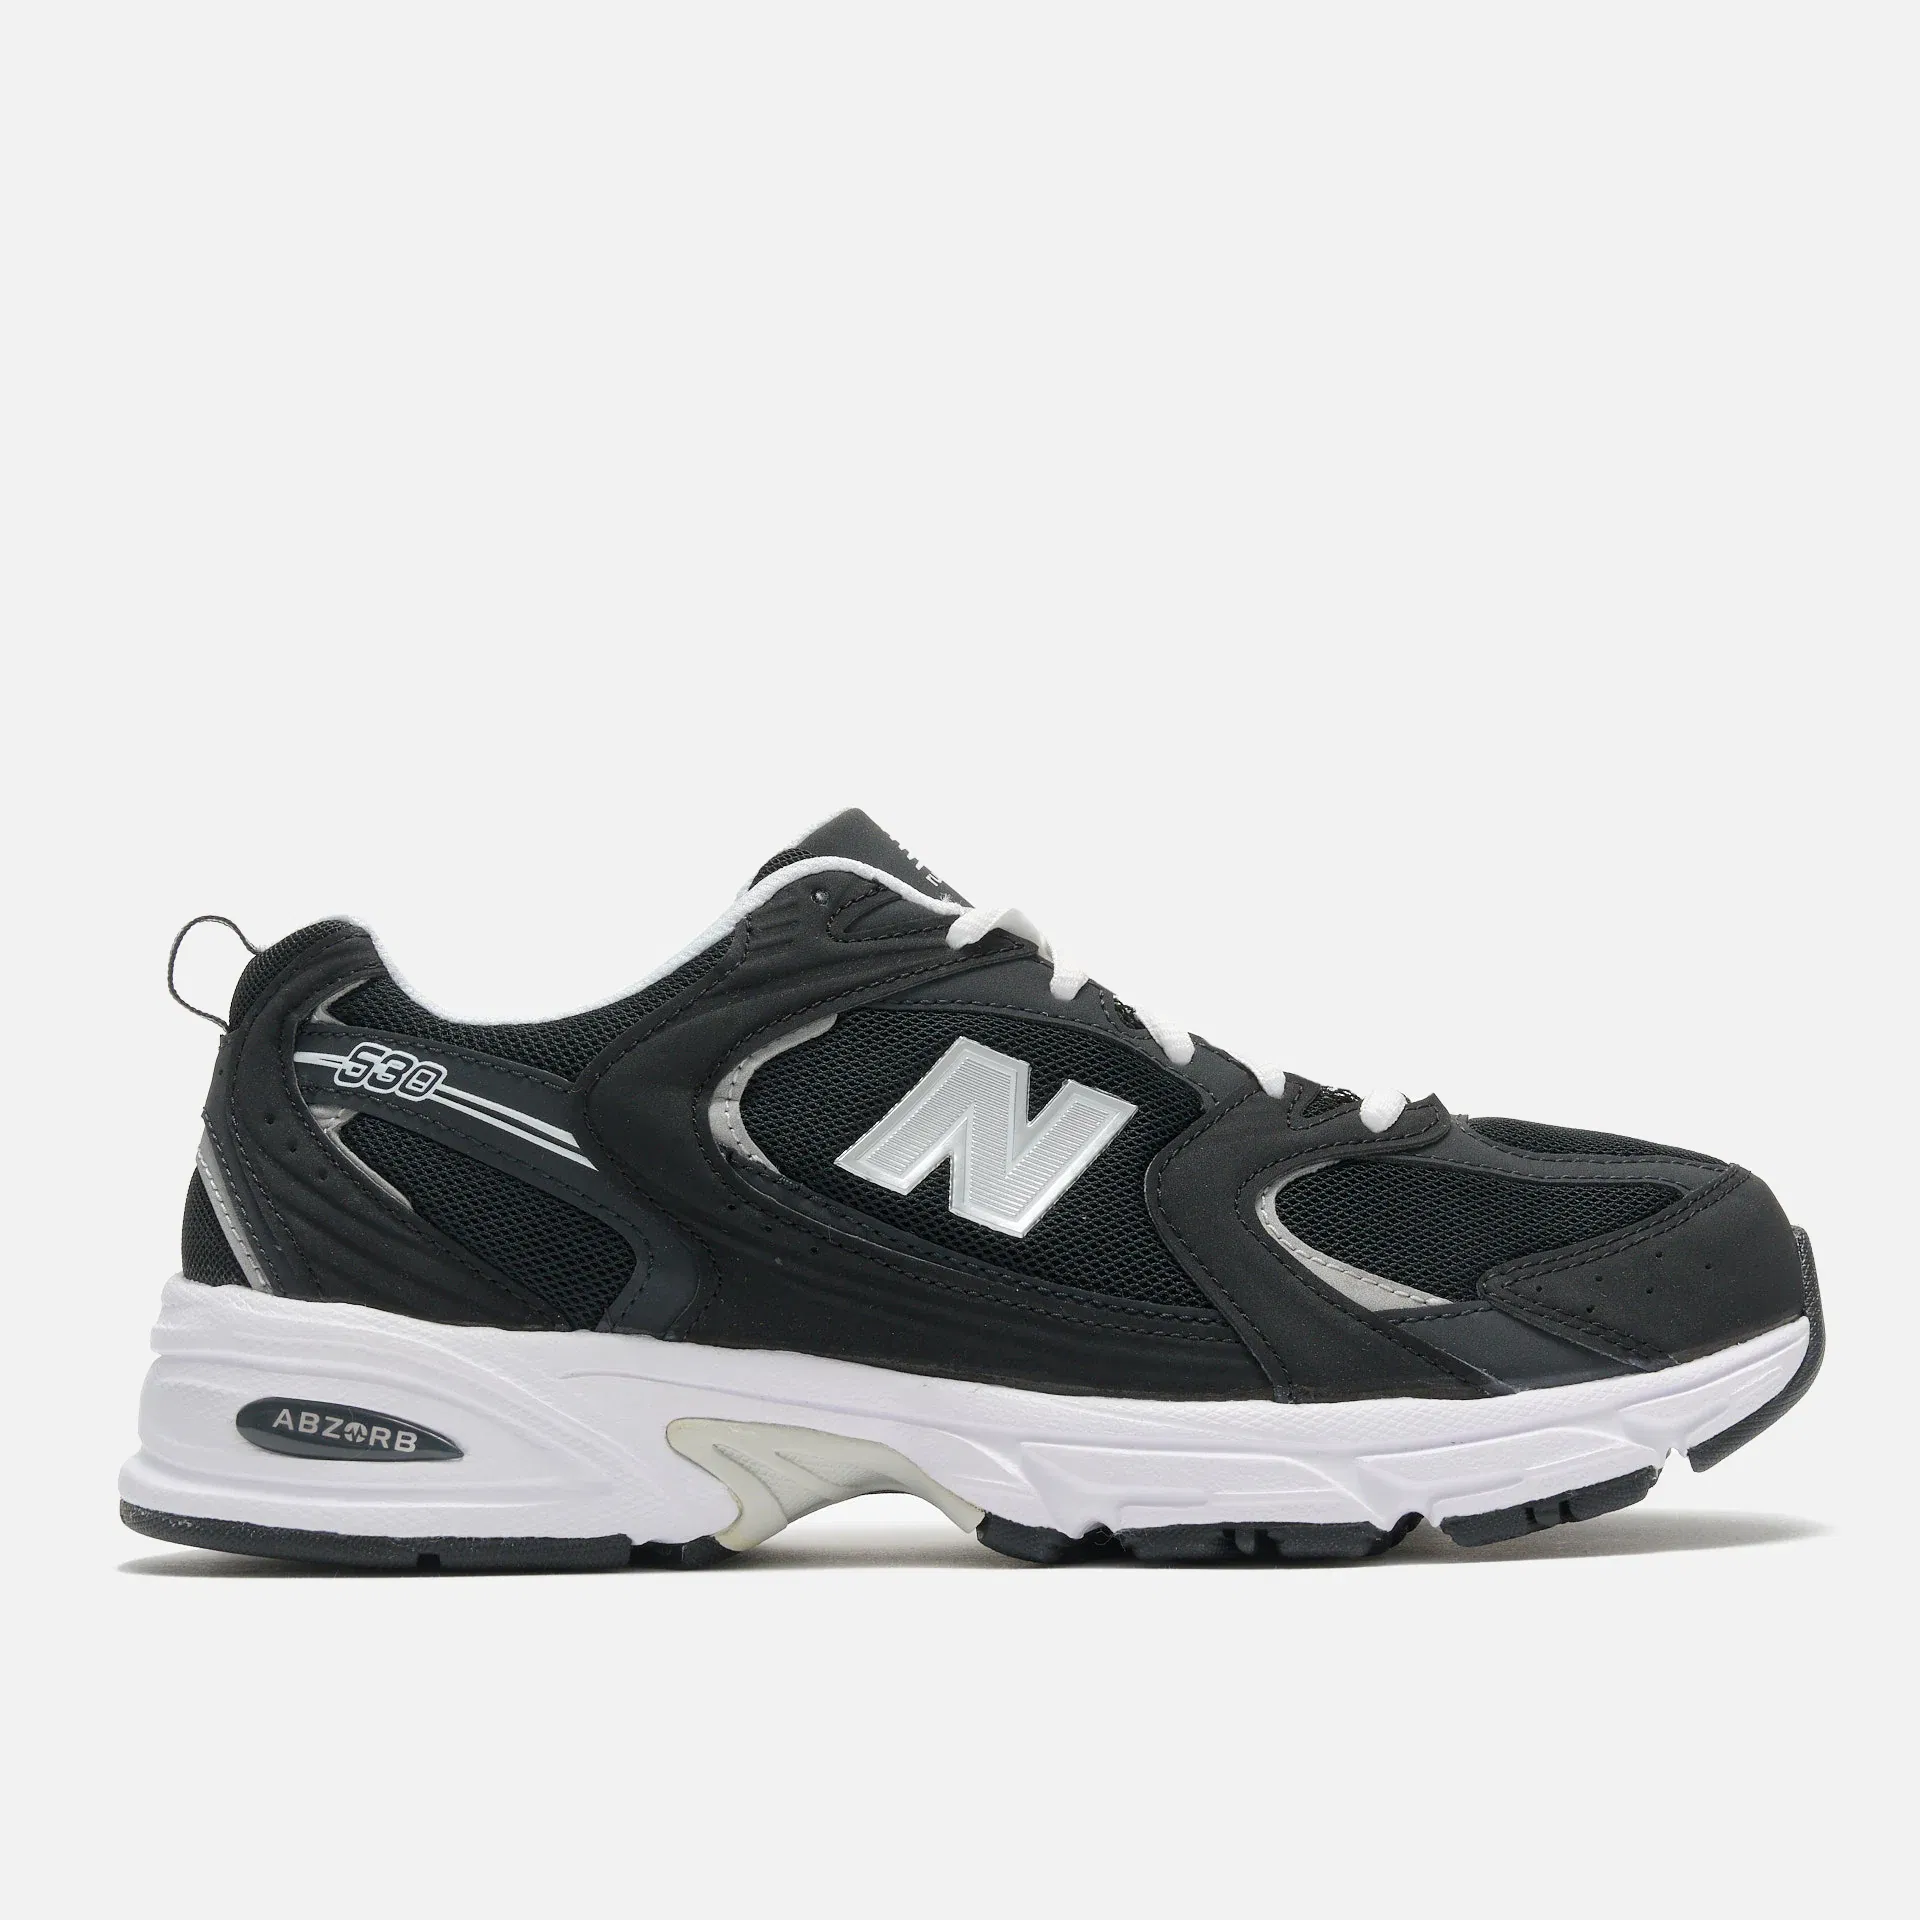 New Balance MR530SMN Sneaker Black/Phantom/Silver